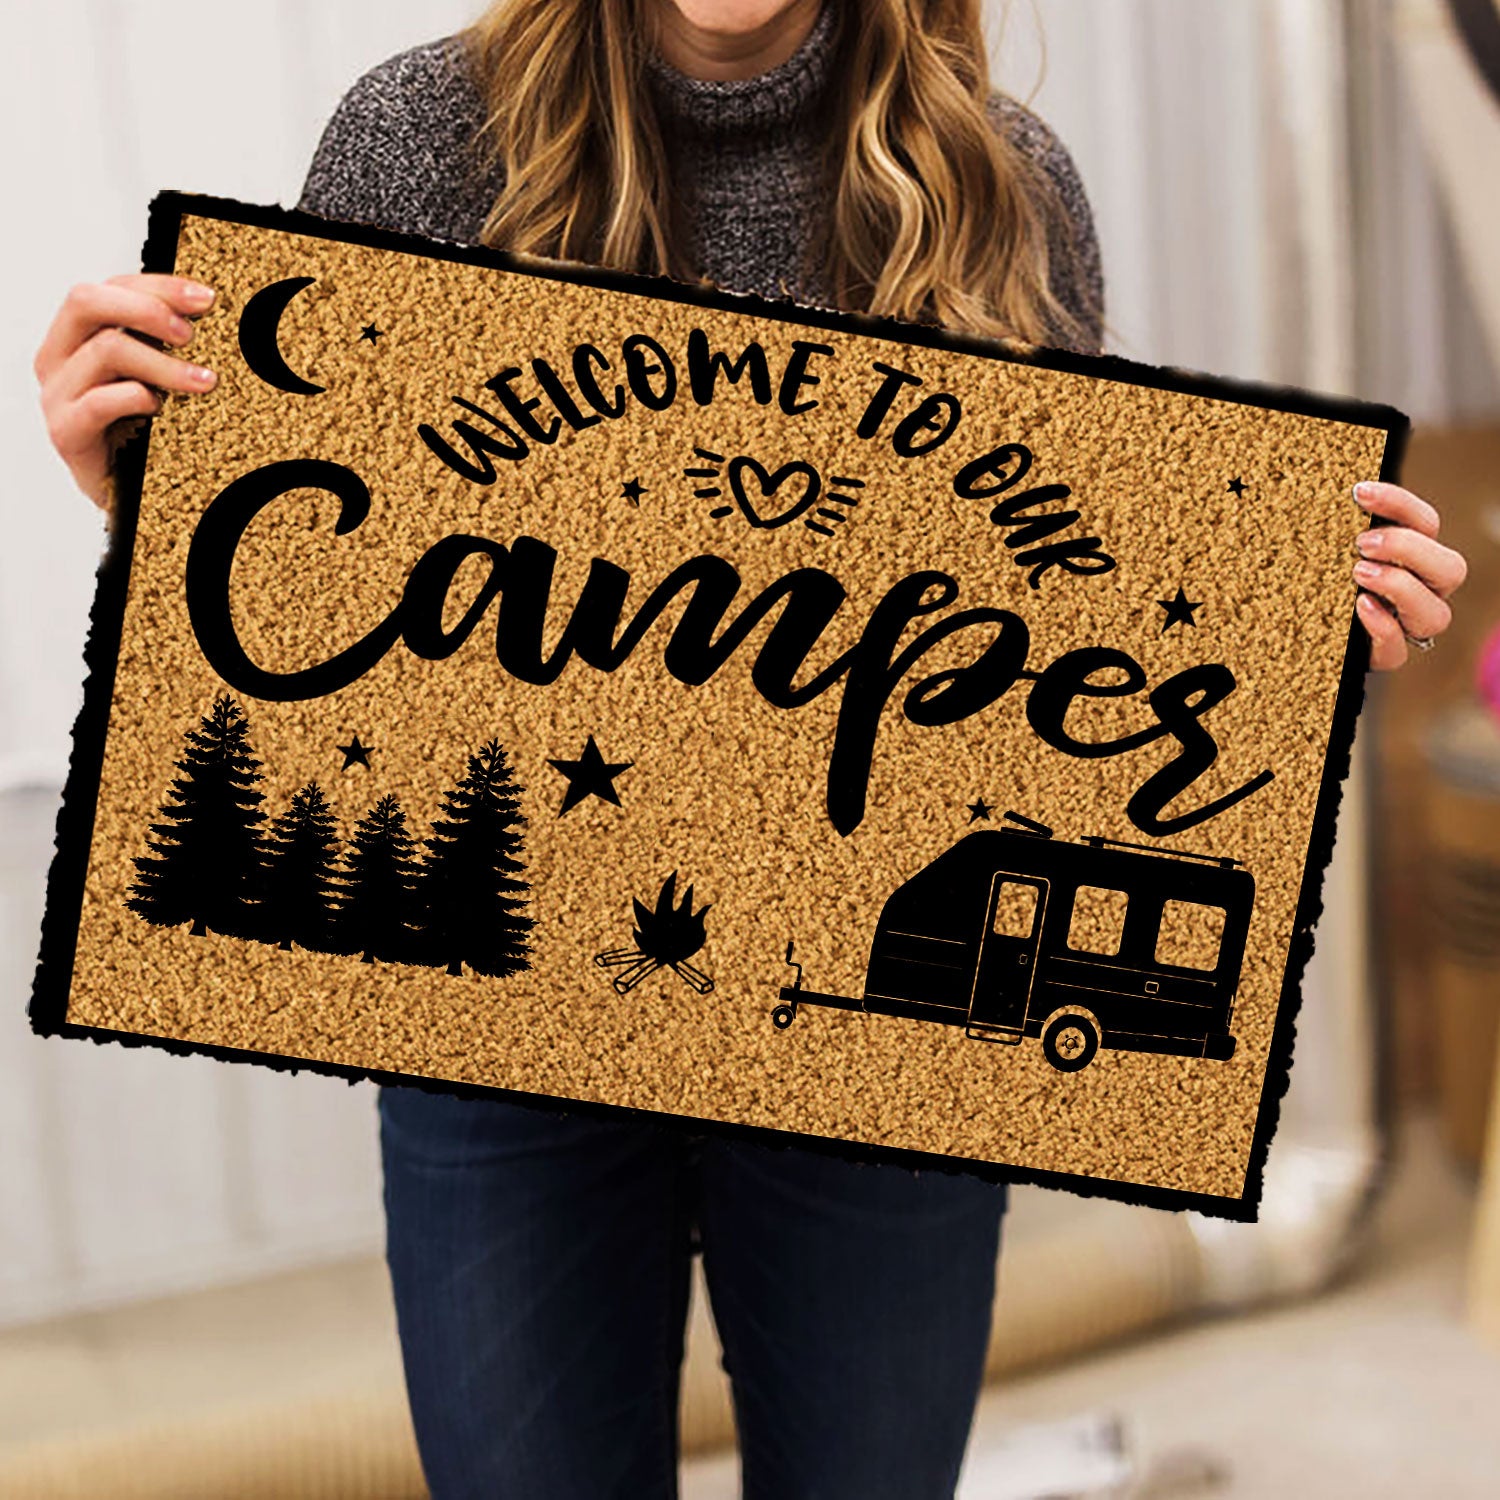 Ohaprints-Doormat-Outdoor-Indoor-Camper-Camping-Rv-Indoor-Outdoor-Welcome-To-Our-Camper-Rubber-Door-Mat-351-